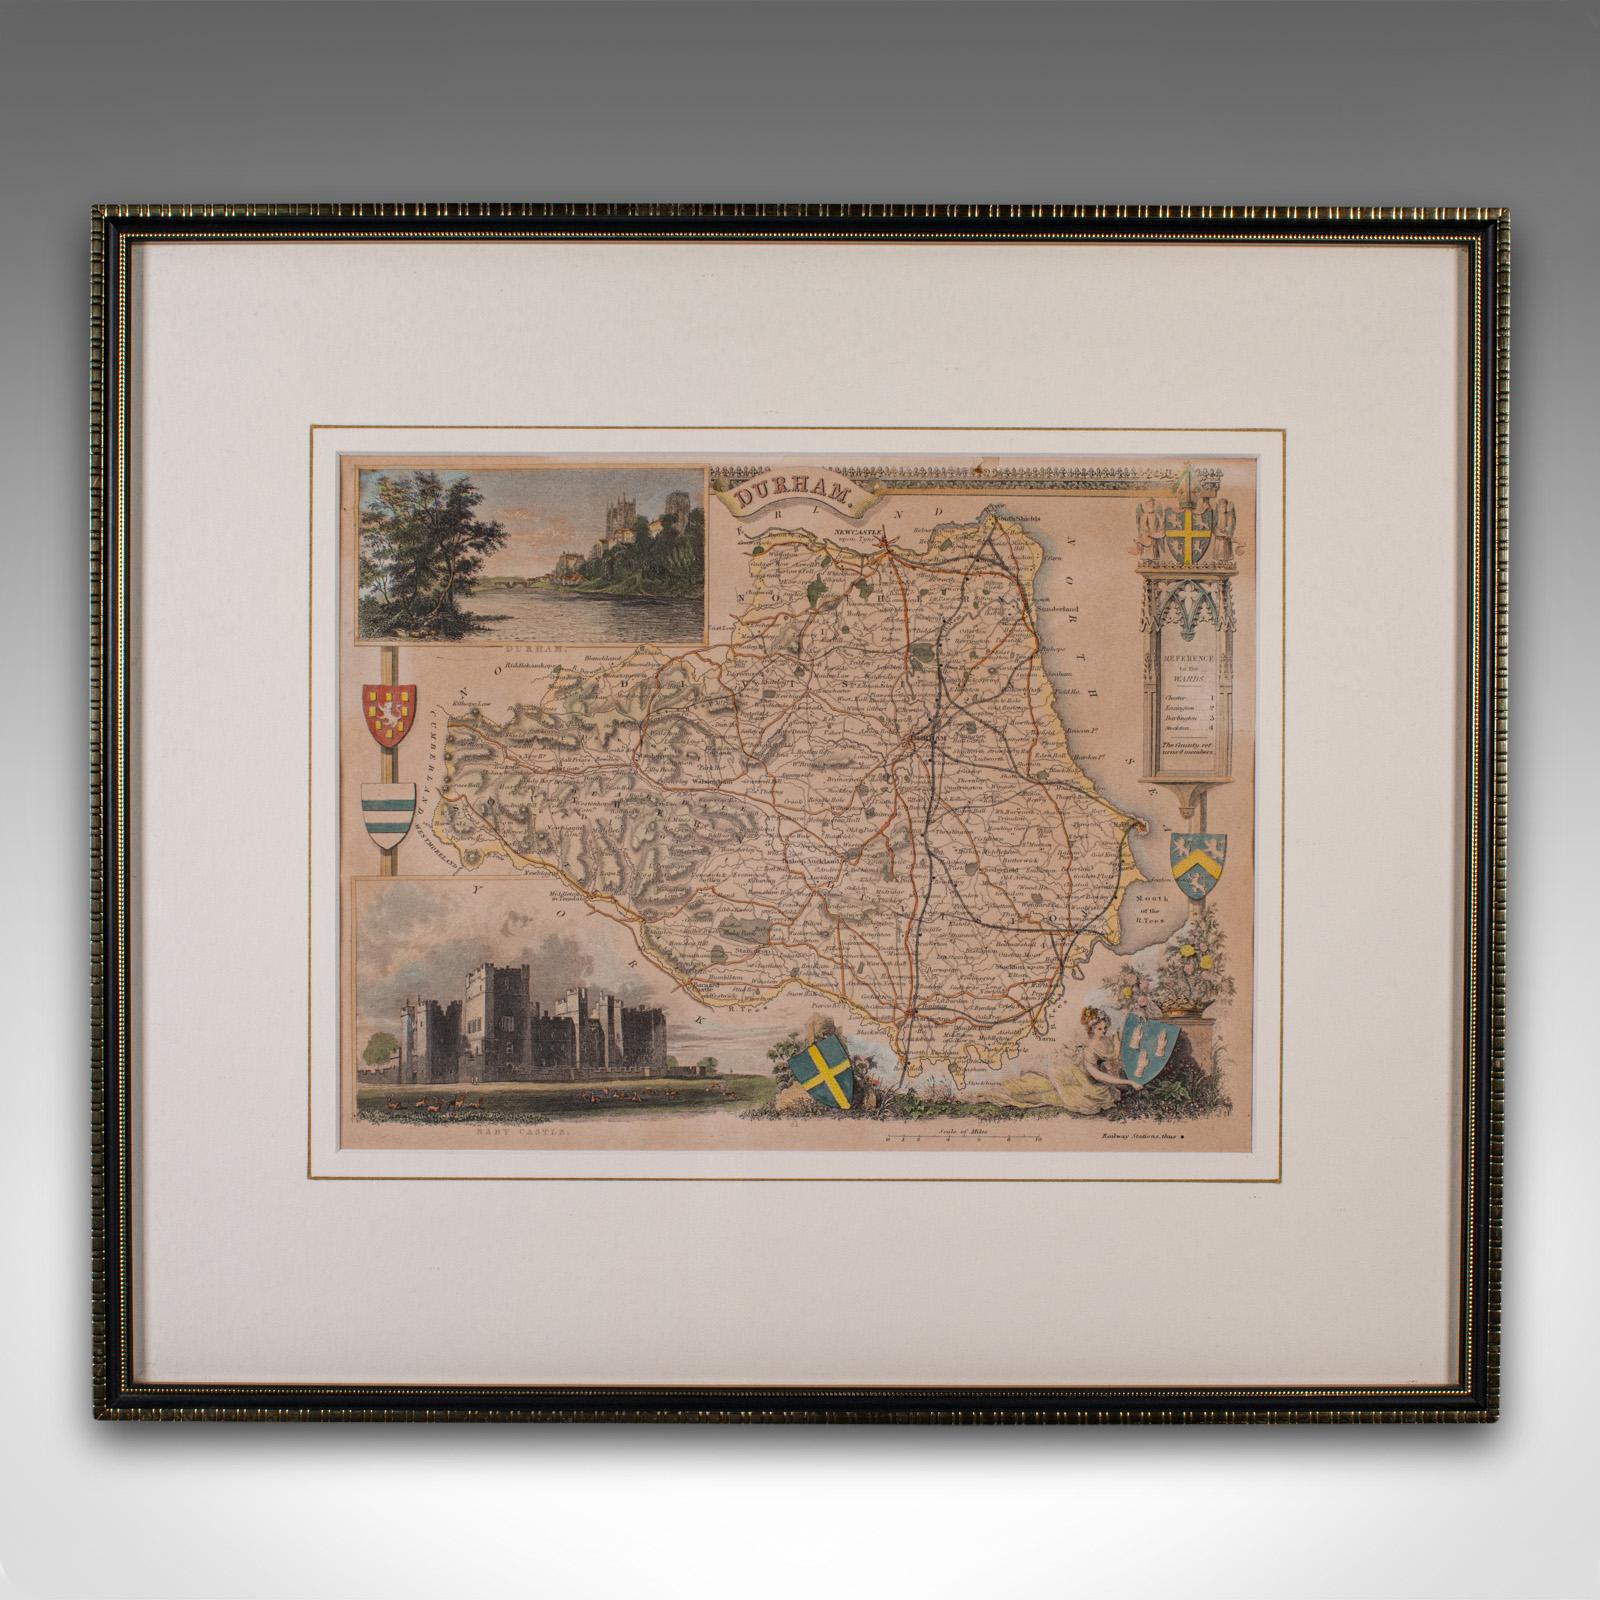 Dies ist eine antike lithographische Karte der Grafschaft Durham. Ein englischer, gerahmter Atlasstich von kartografischem Interesse aus der Mitte des 19. Jahrhunderts und später.

Hervorragende Lithografie der Grafschaft Durham und regionale